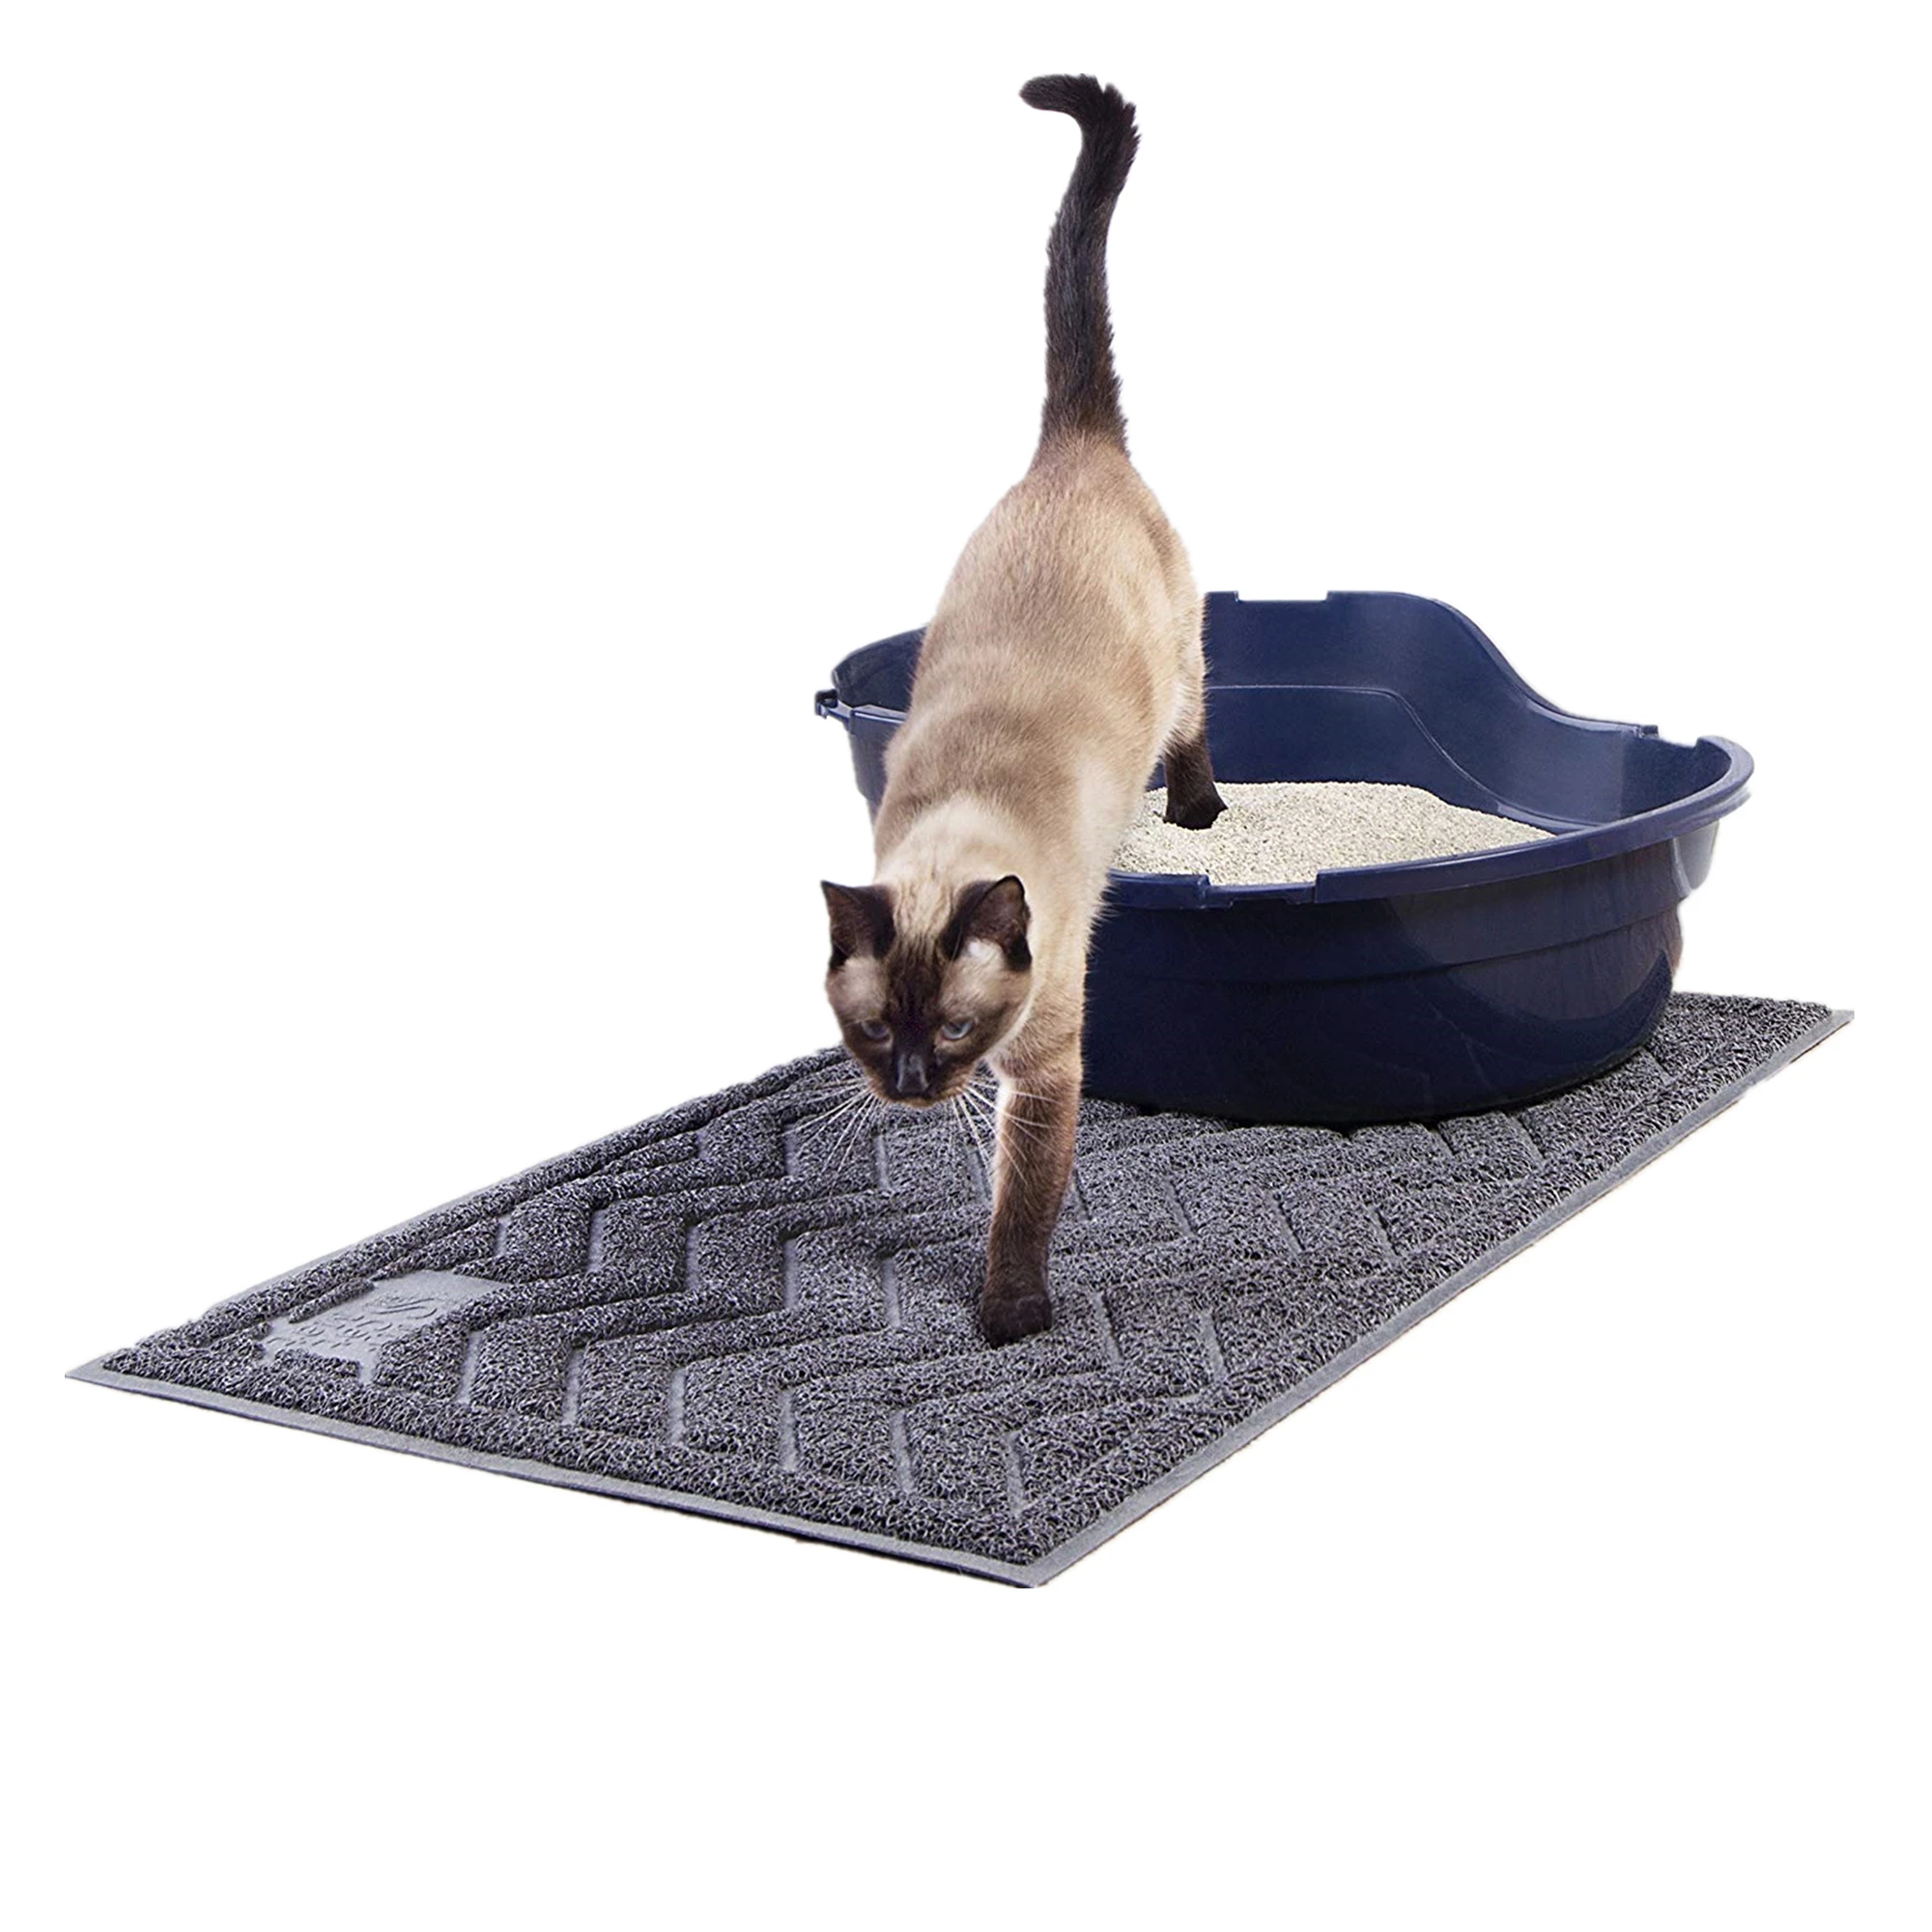 Tapis de litière anti-dérapant pour chat Amazon Best Selling Kitty tapis pour animaux de compagnie